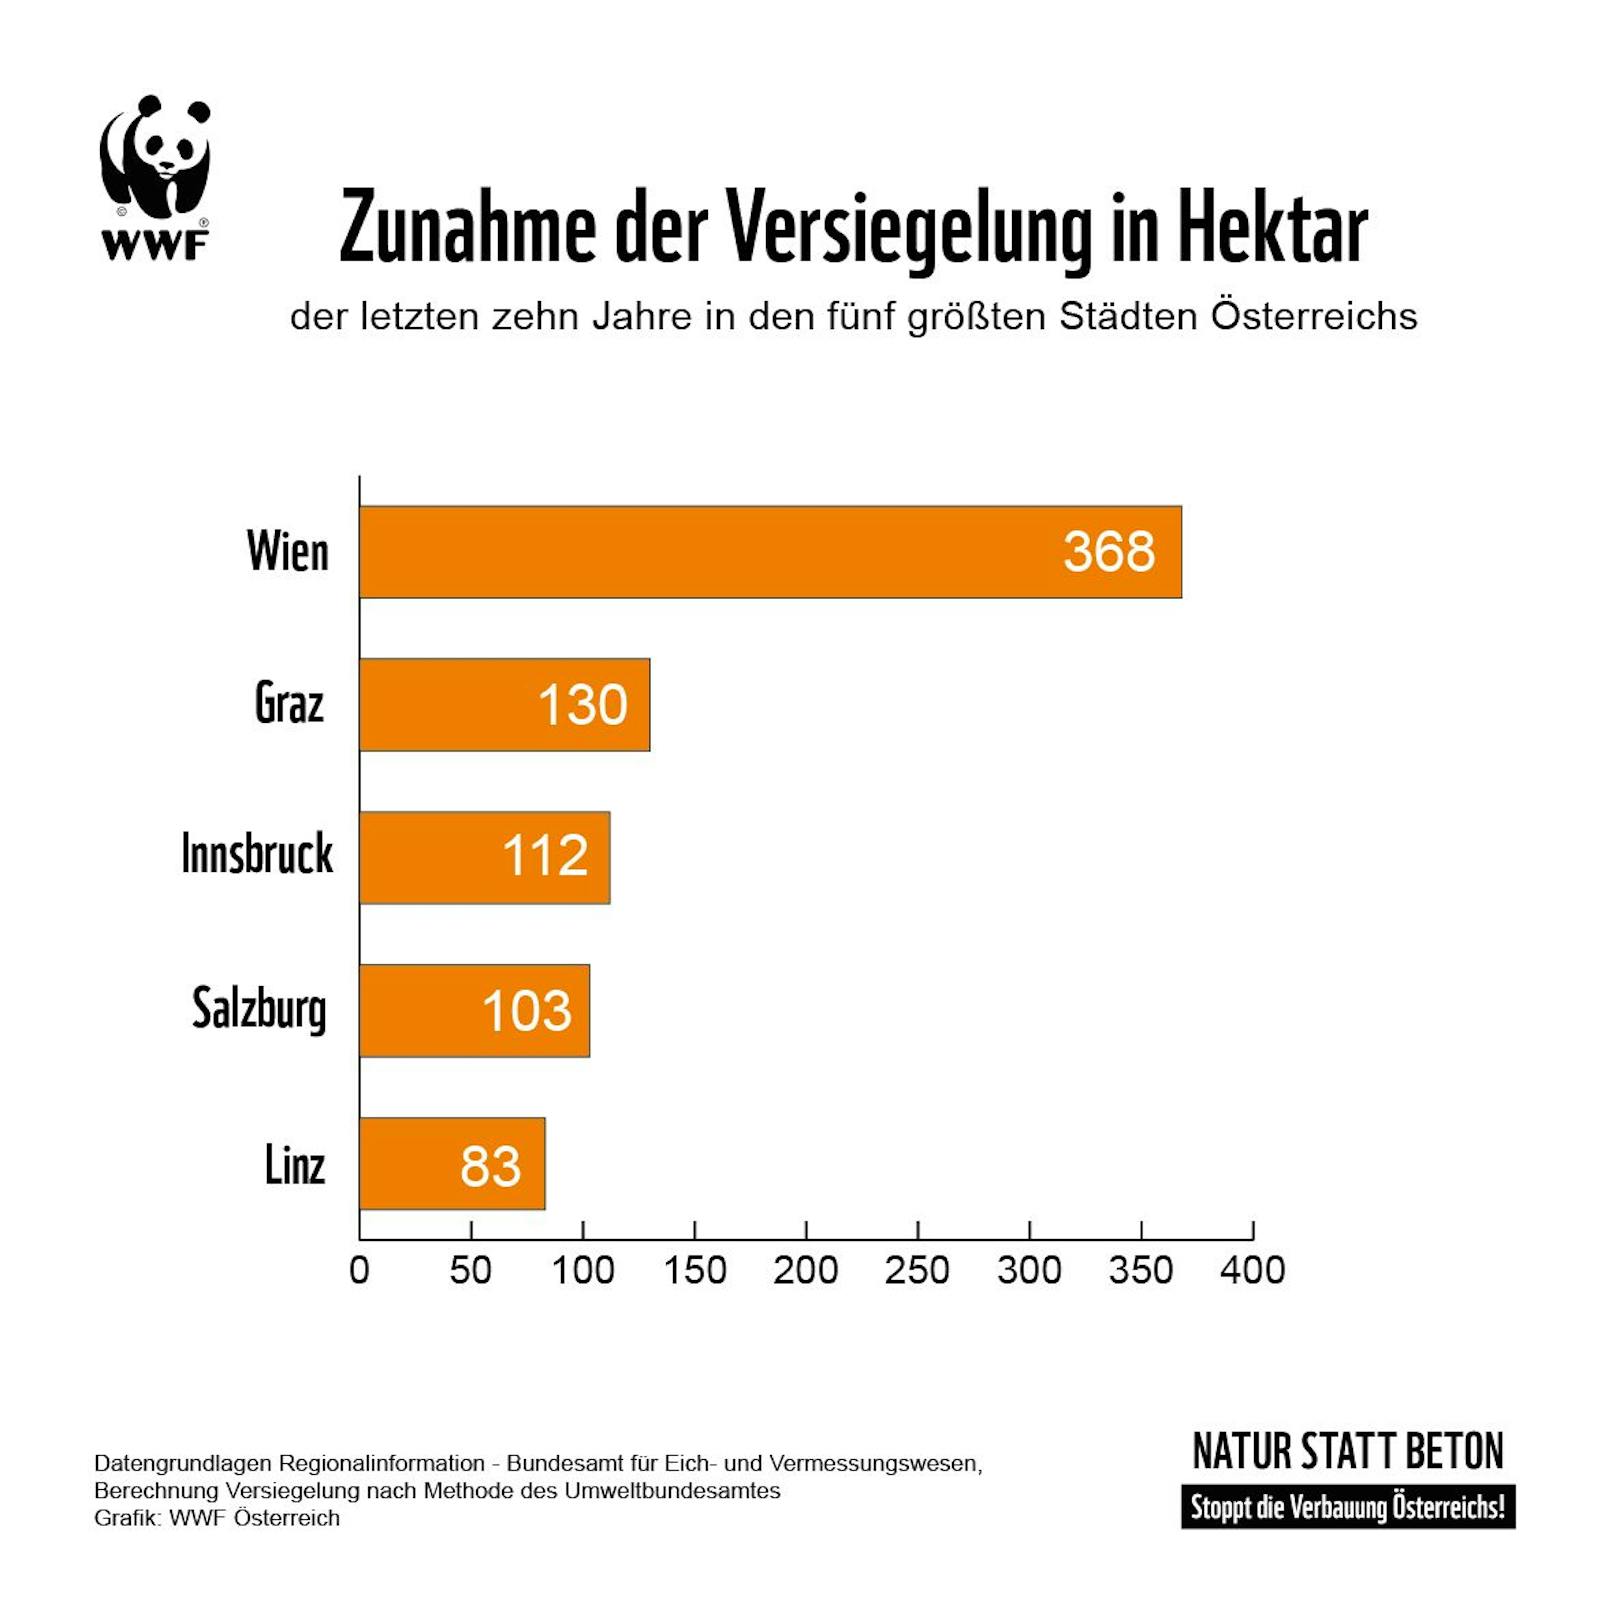 Die Grafik zeigt die Zunahme der Versiegelung in Hektar der fünf größten Städte Österreichs in den letzten zehn Jahren.